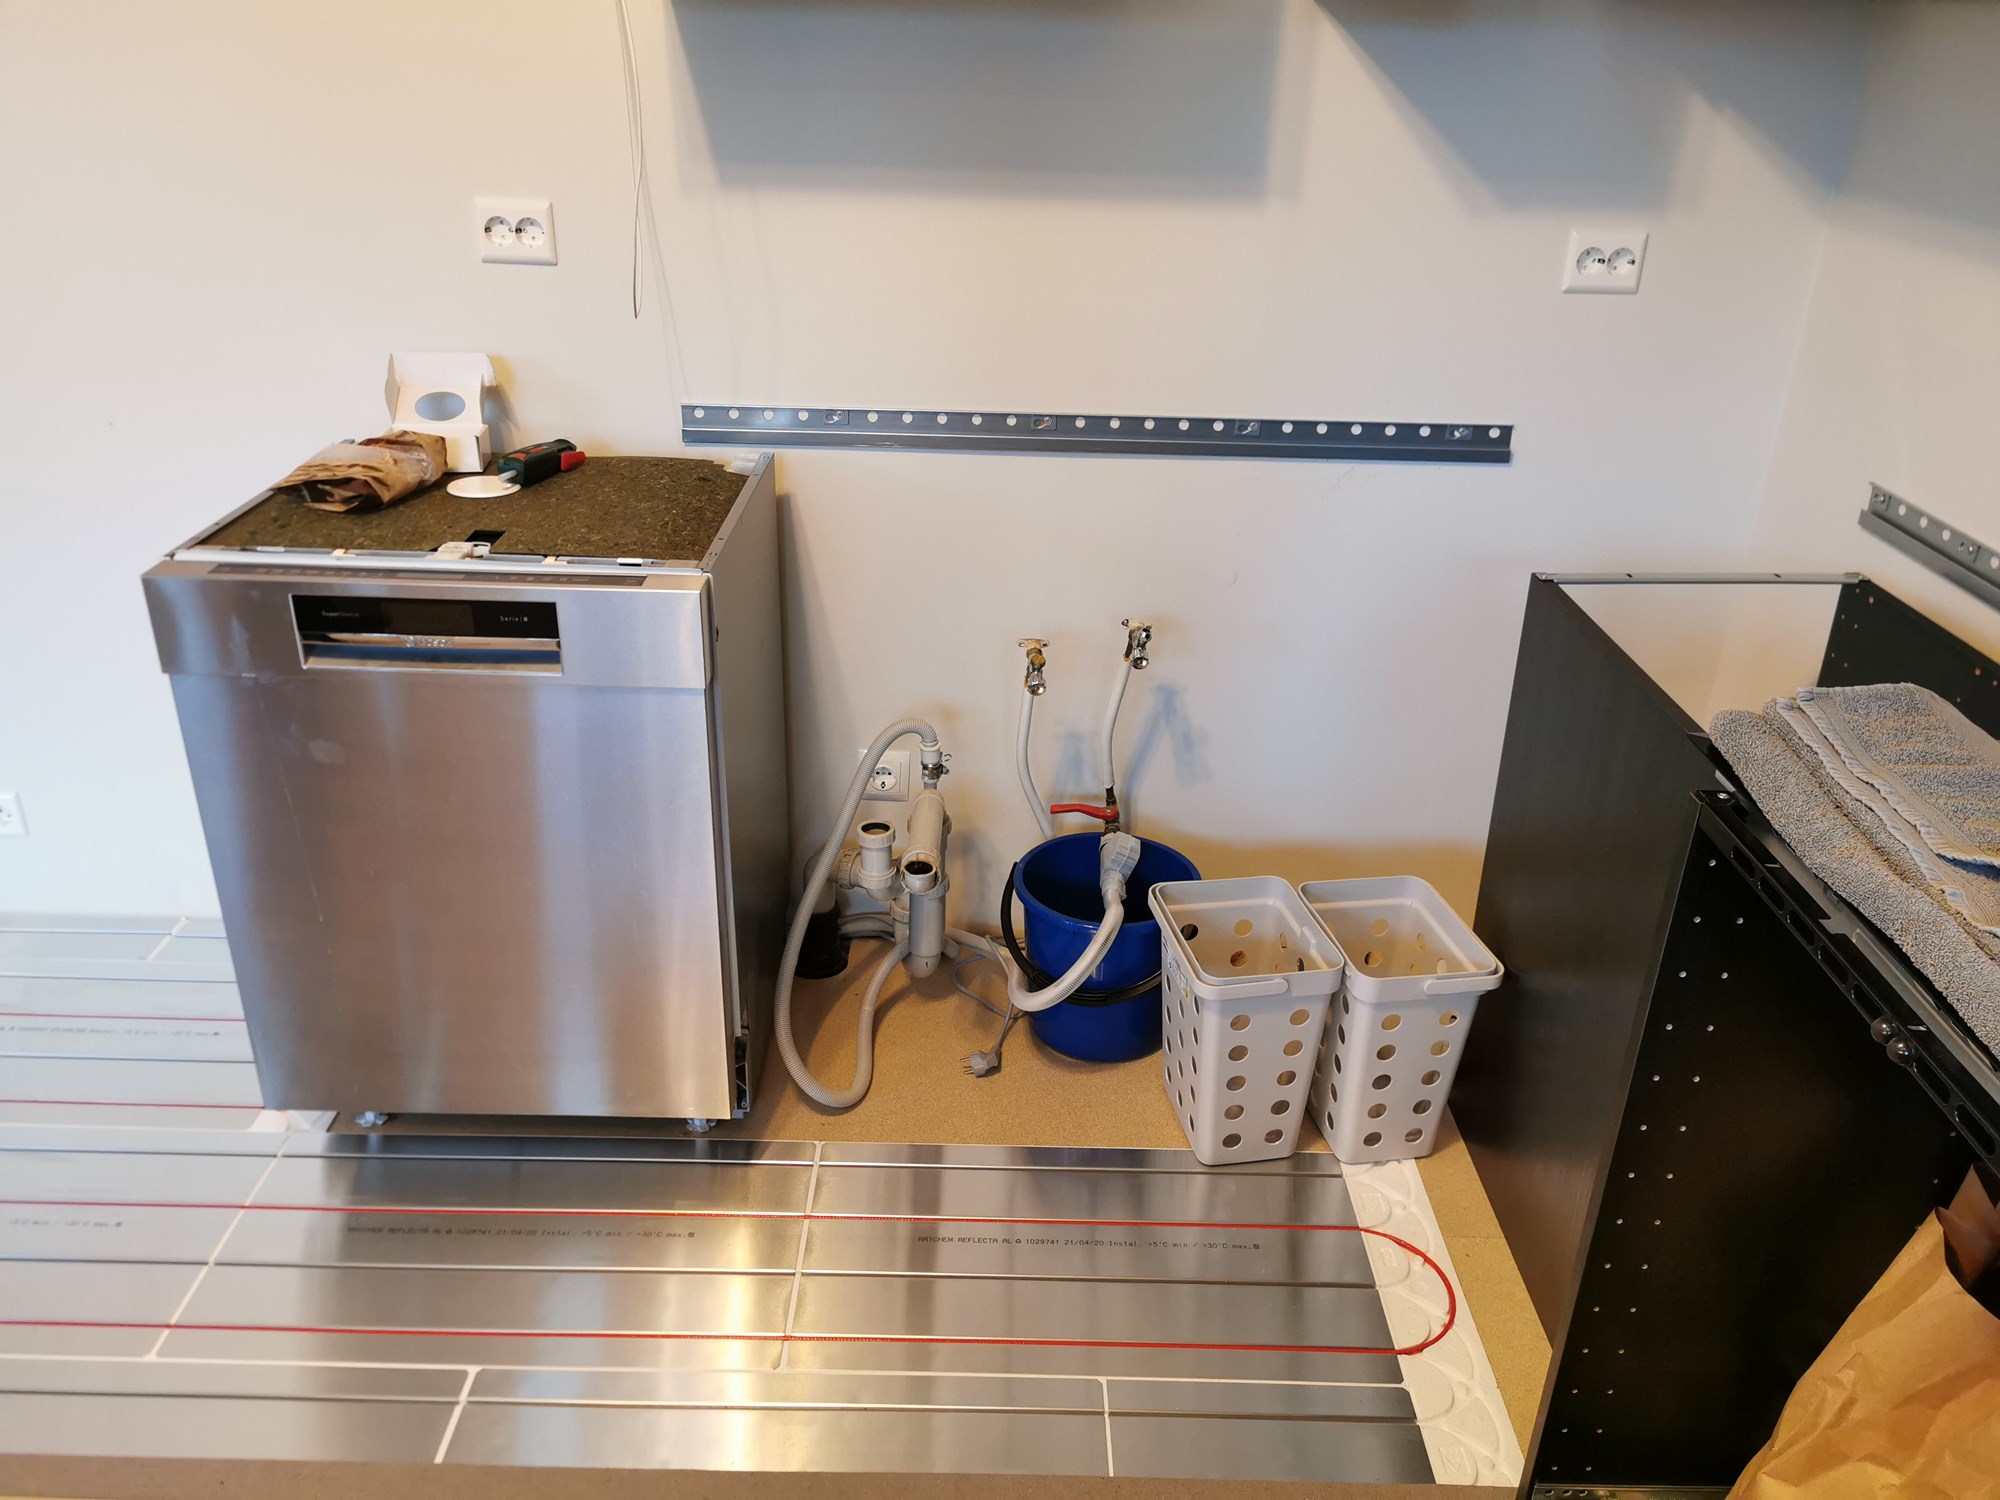 Oppvaskemaskin ikke innbygget, stående i ende under benkeplate - 2020-07-28 18.51.45.jpg - Hanzo